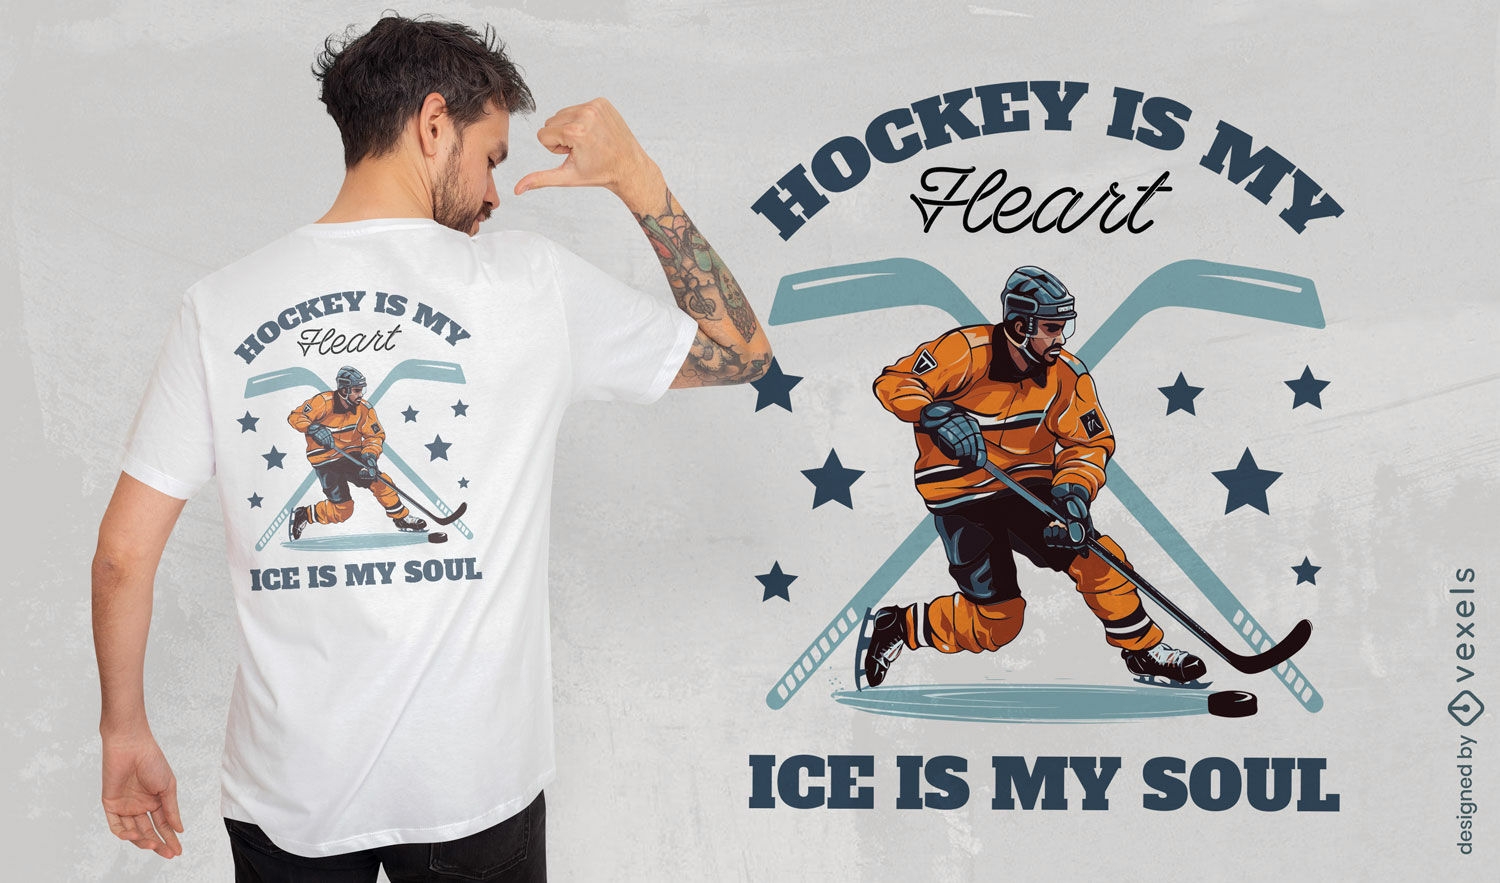 Dise?o de camiseta pasi?n por el hockey.